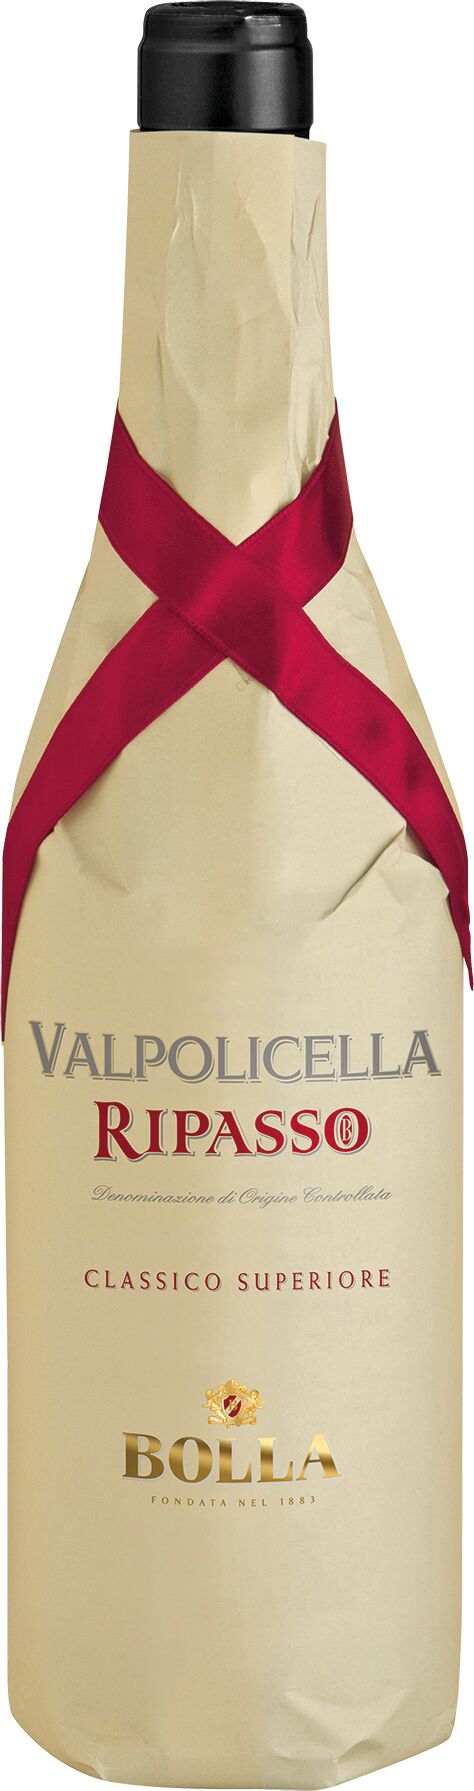 Bolla Valpolicella Ripasso DOC Classico Superiore 2021 - 0.75 l